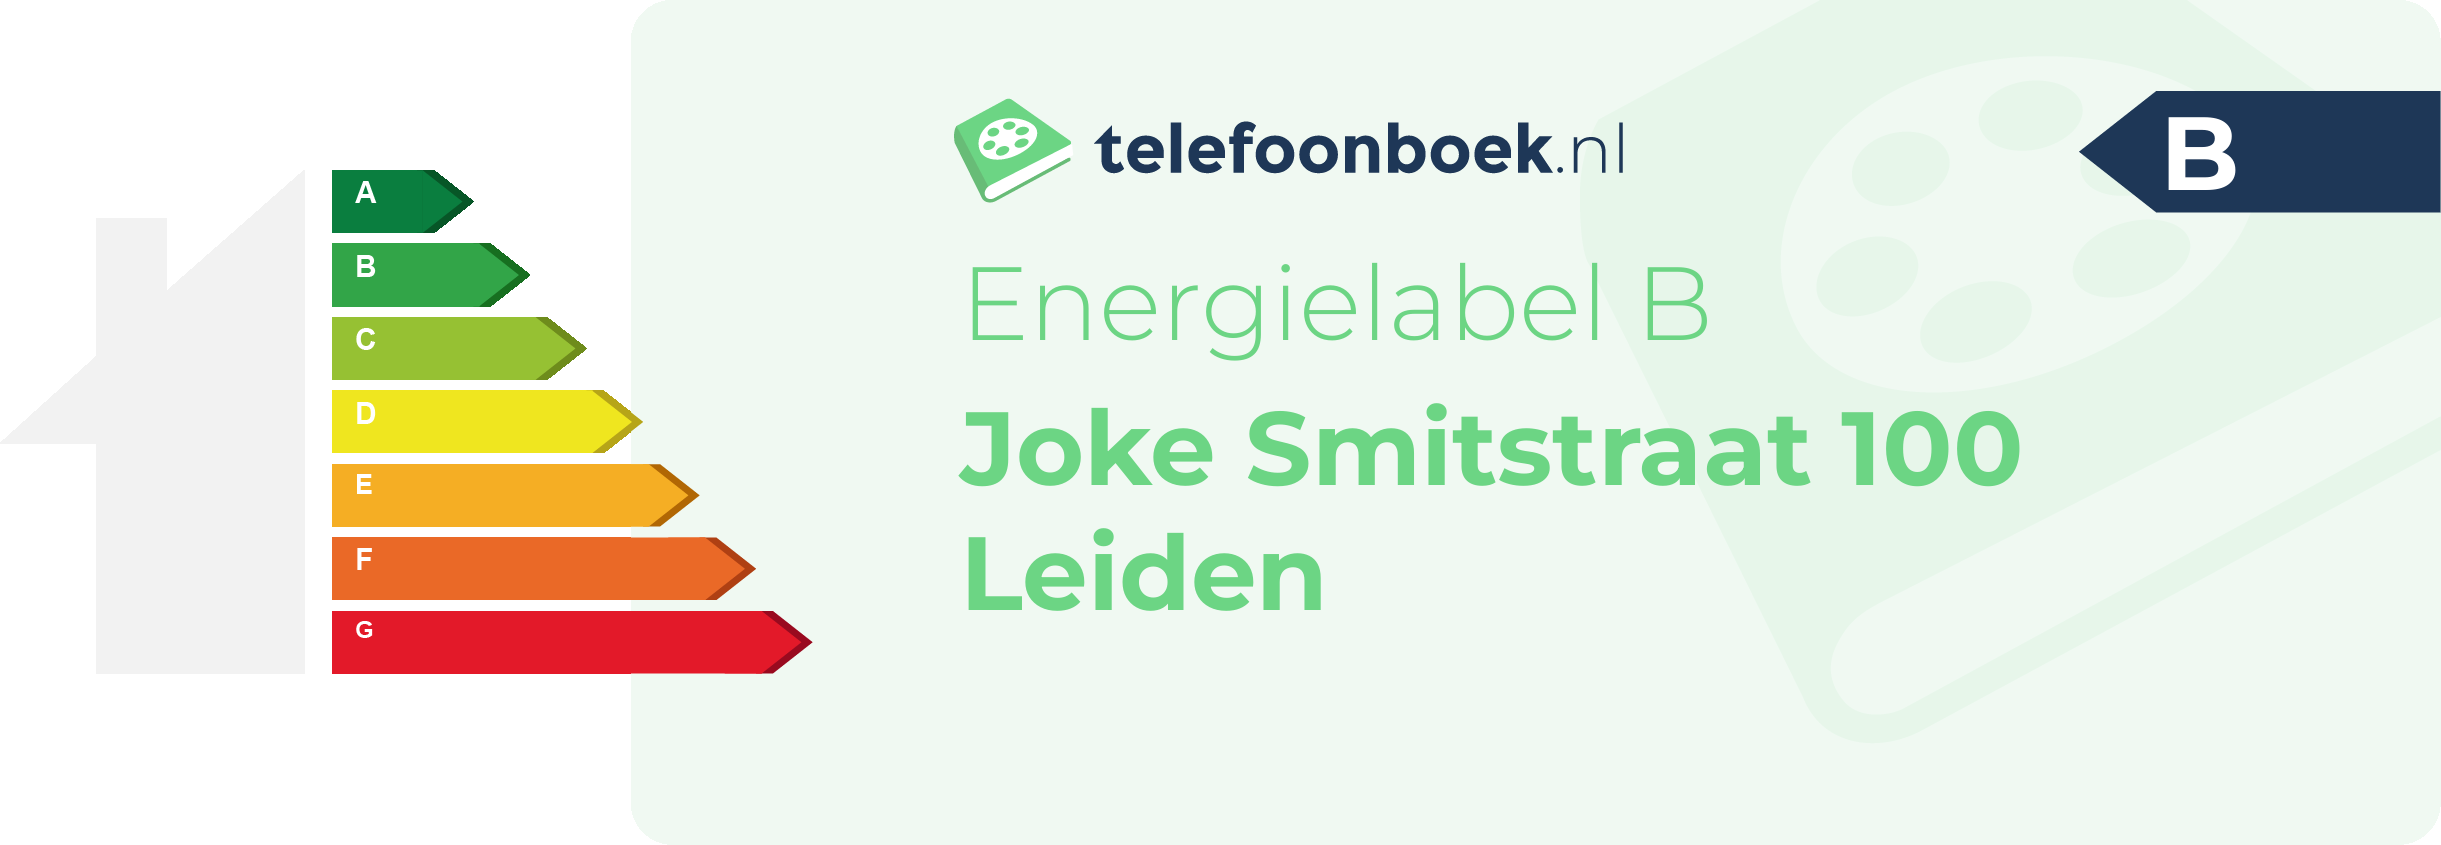 Energielabel Joke Smitstraat 100 Leiden